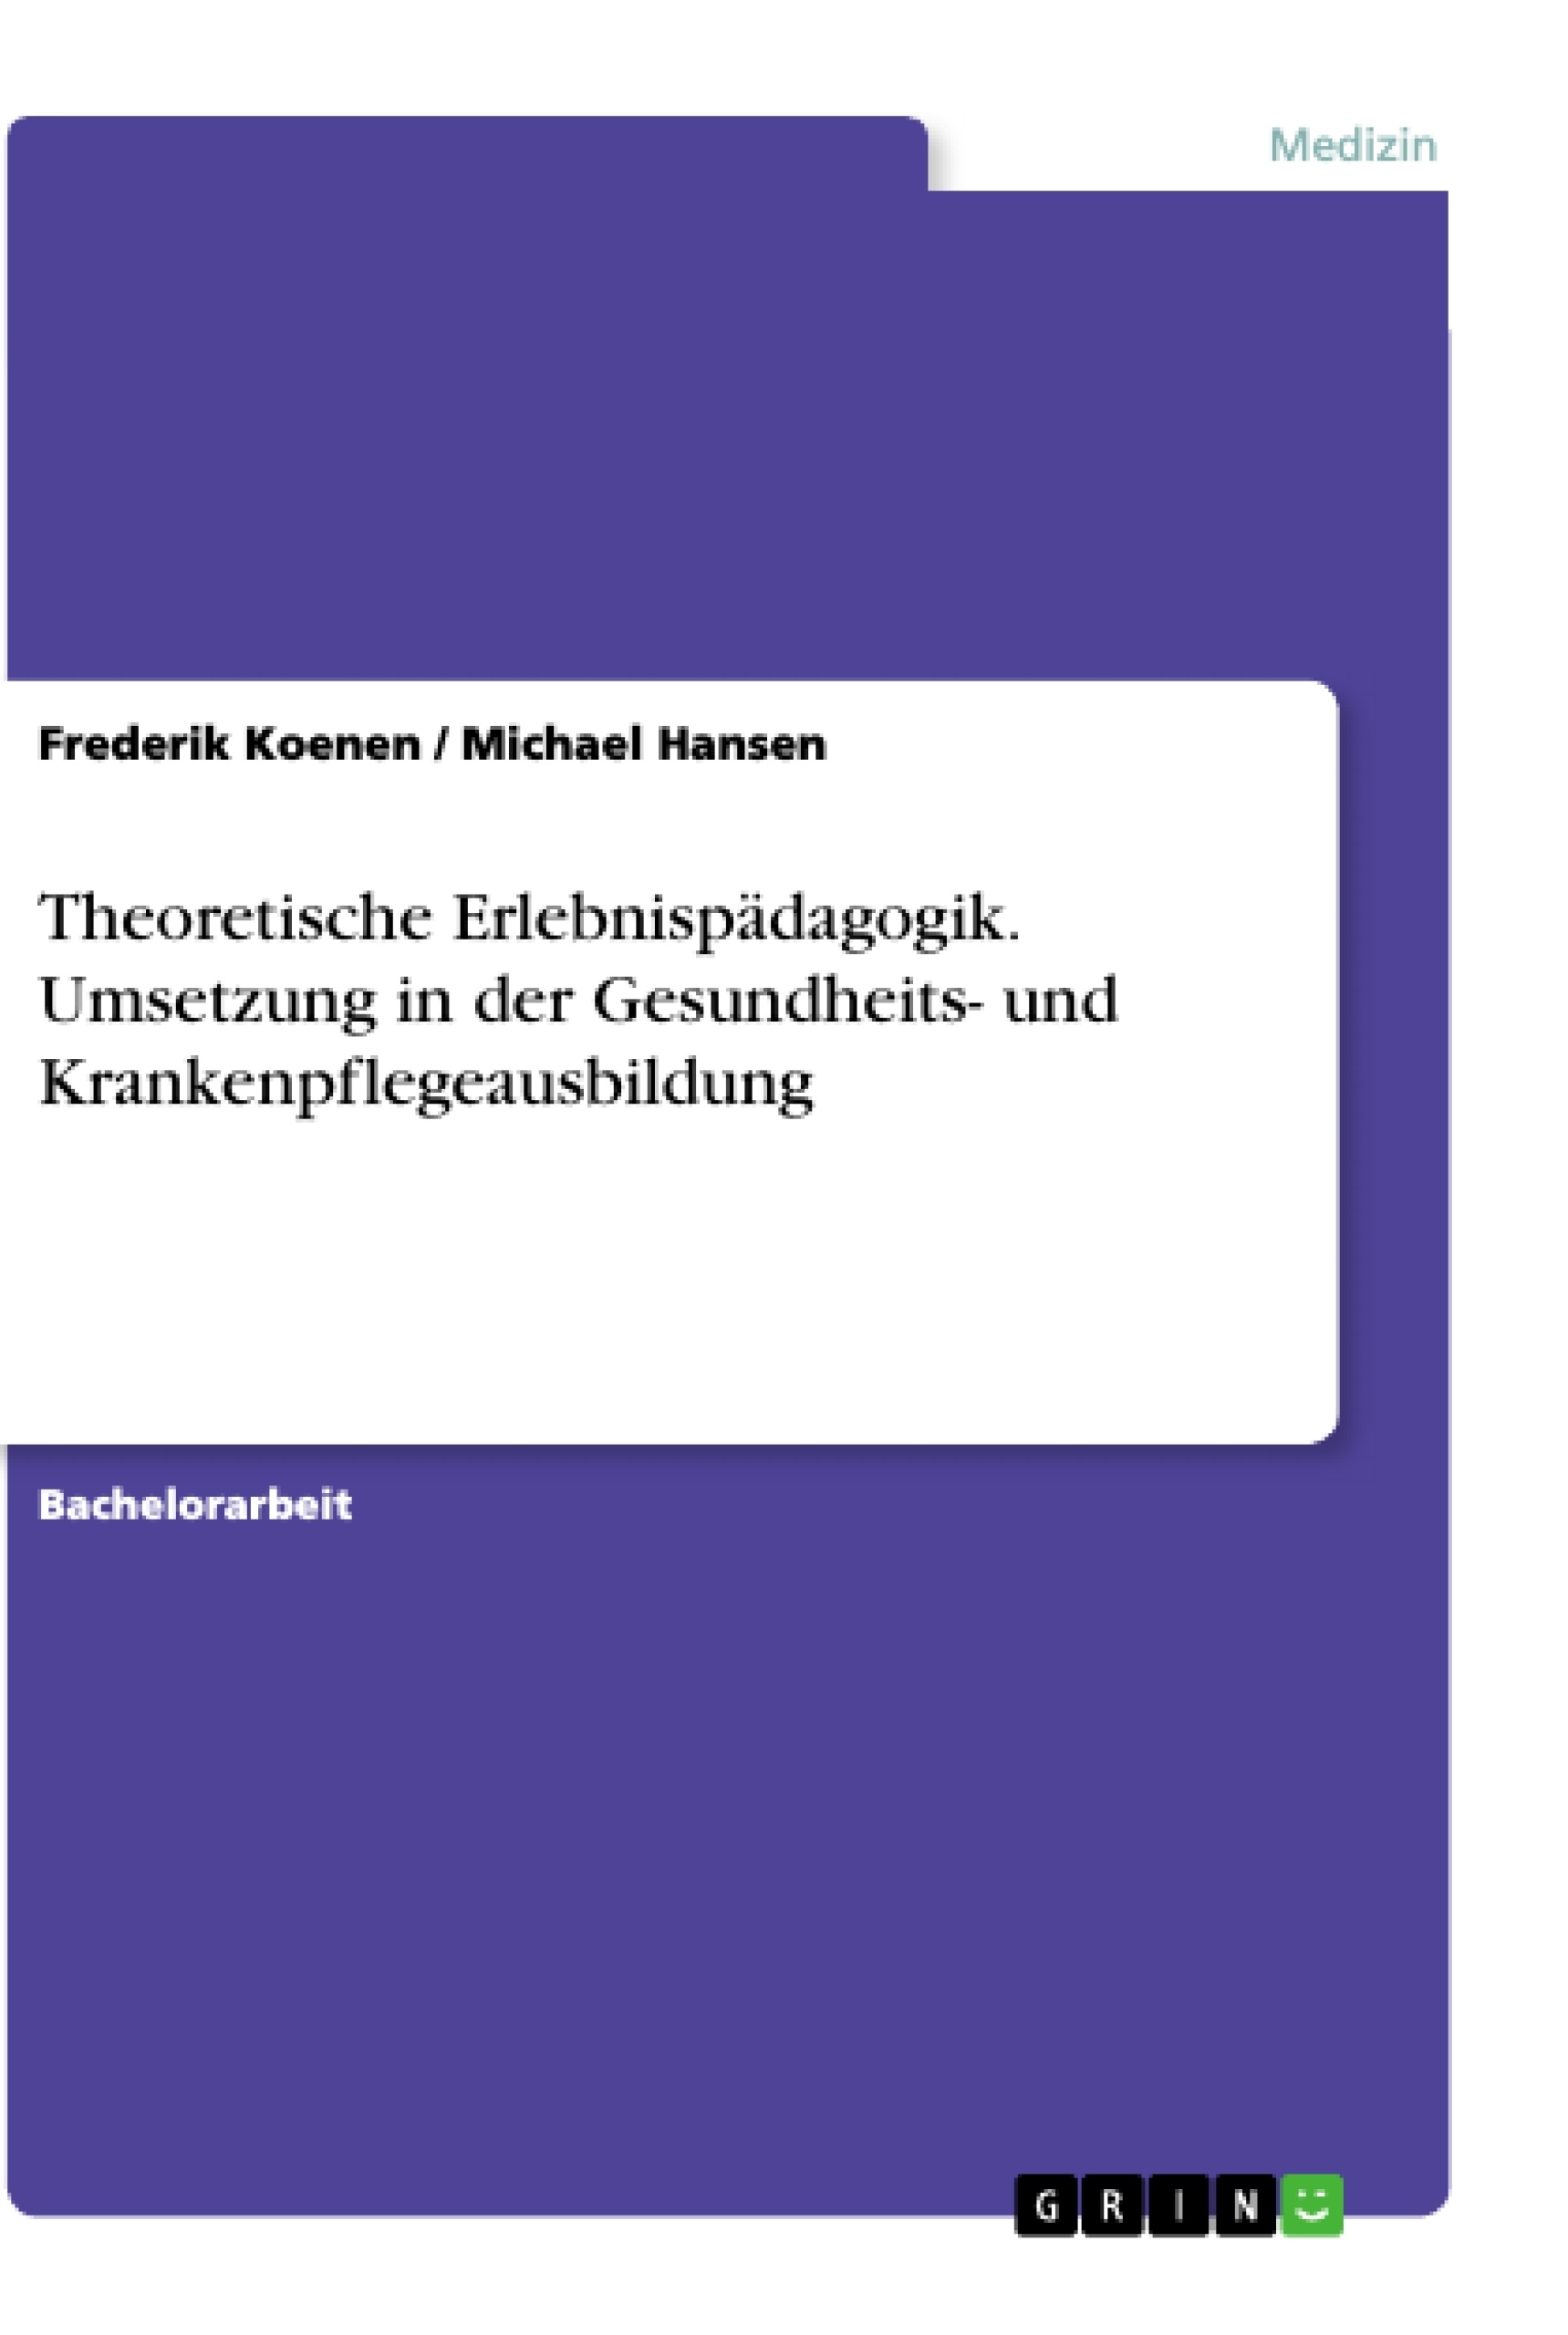 Titel: Theoretische Erlebnispädagogik. Umsetzung in der Gesundheits- und Krankenpflegeausbildung